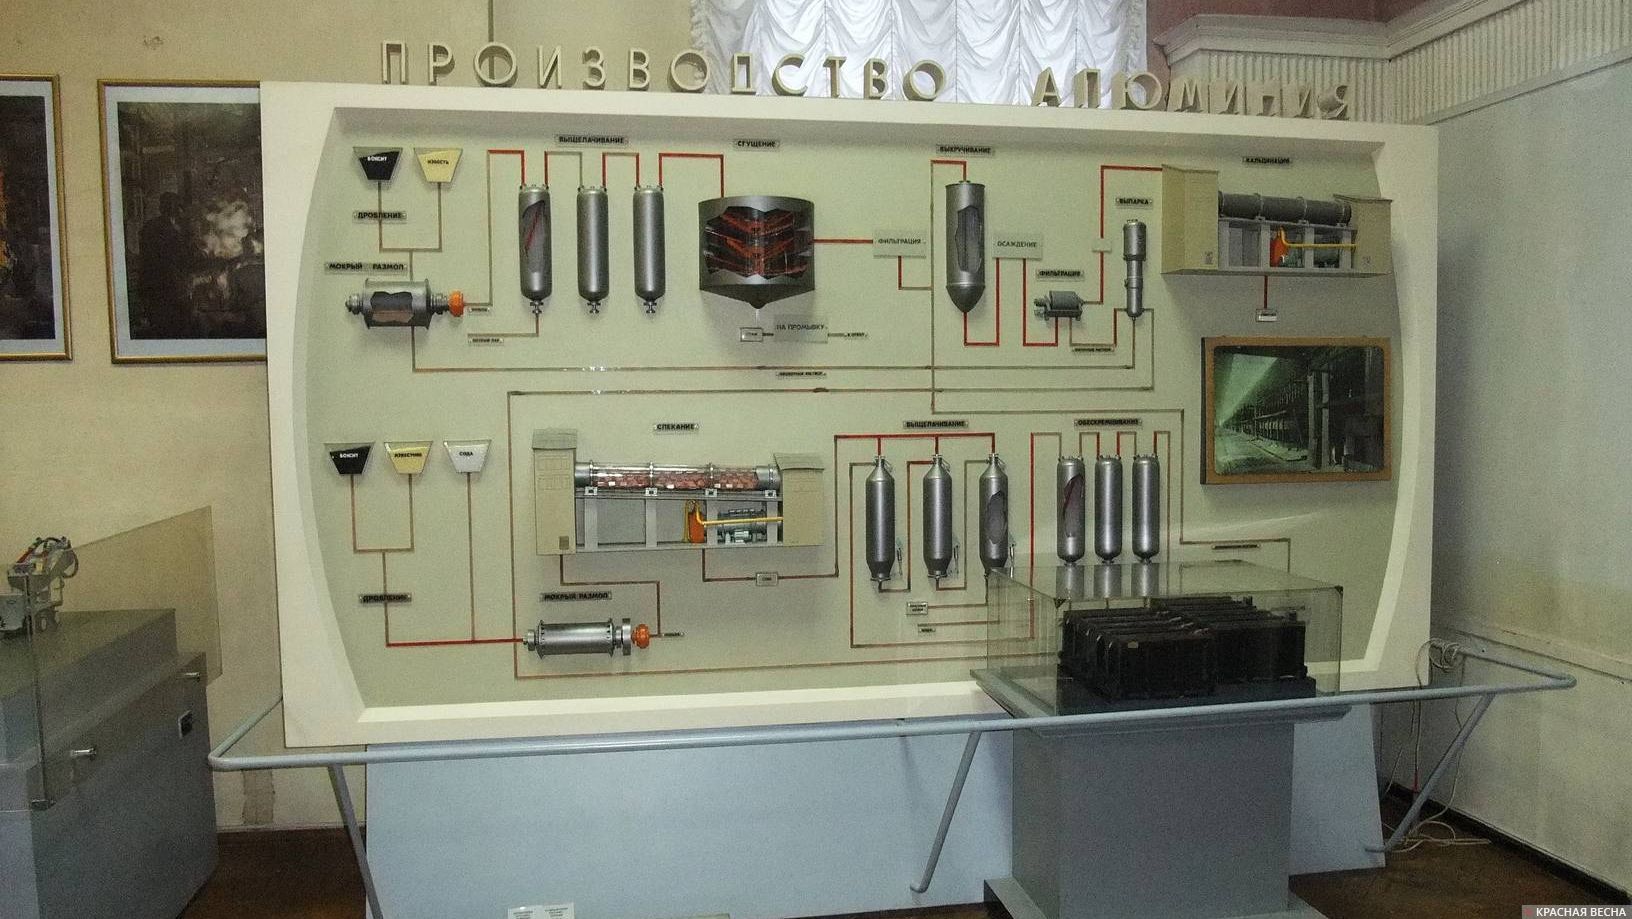 Производство алюминия. Мнемосхема технологического процесса. Политехнический музей.